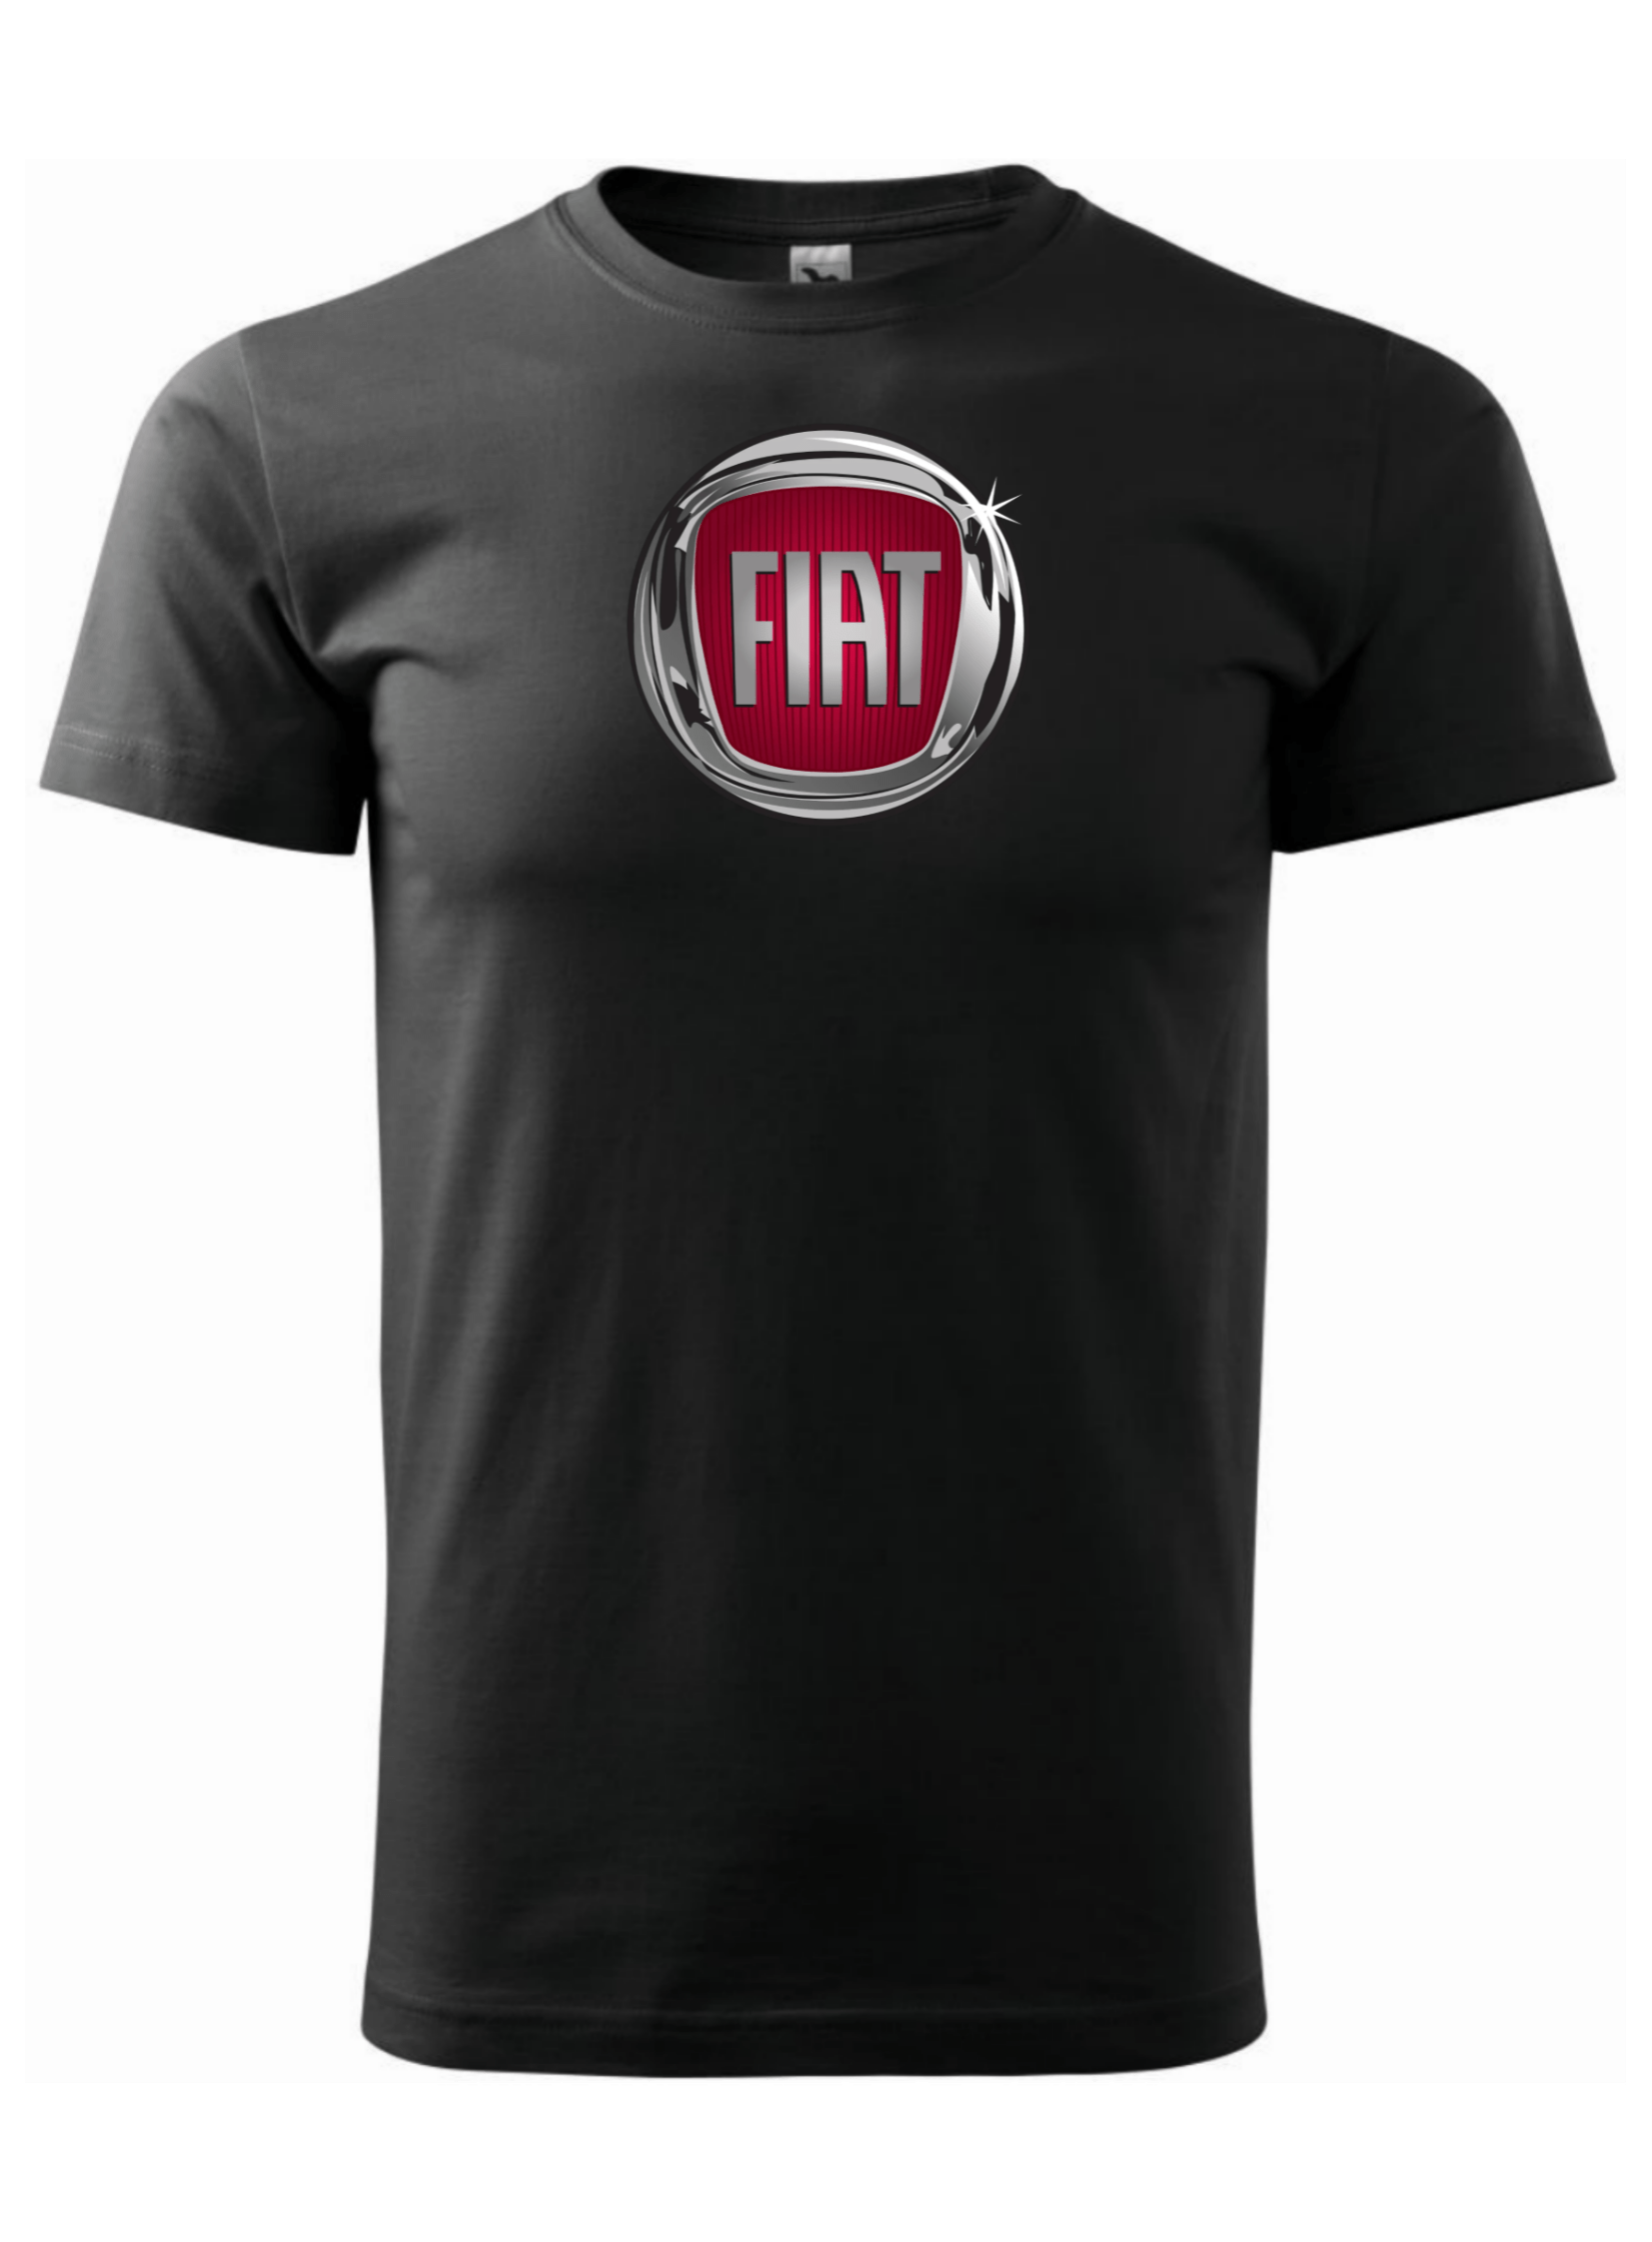 Pánské tričko s potiskem značky Fiat